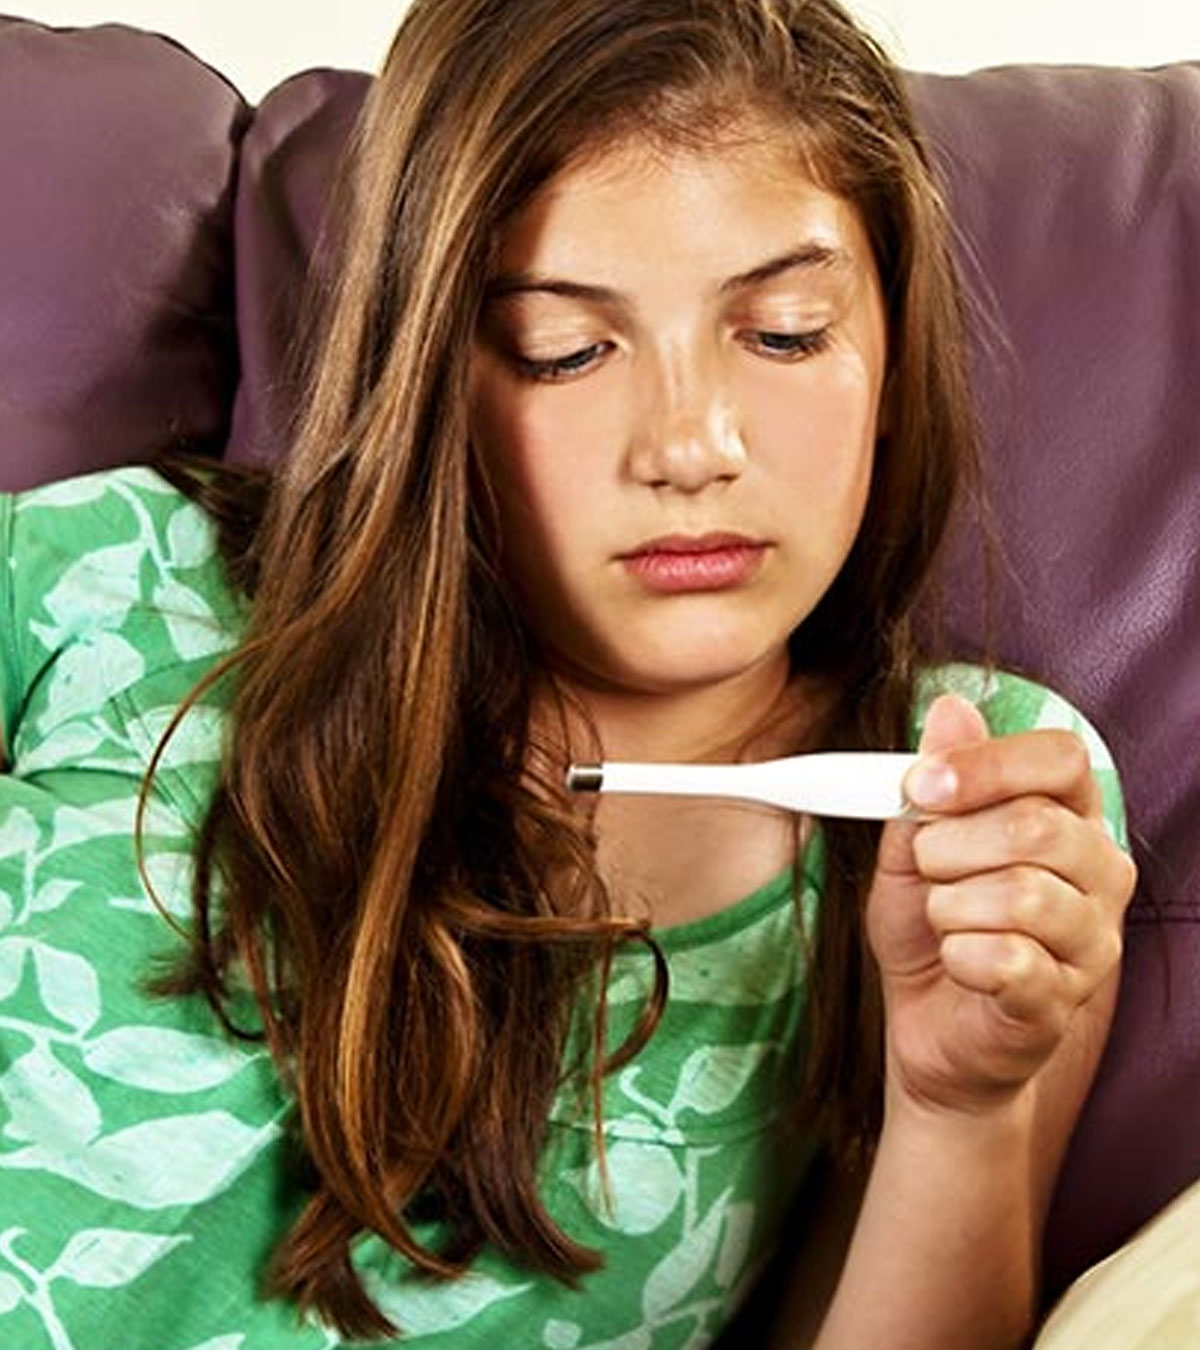 如何降低儿童和青少年的发烧:提示和补救措施